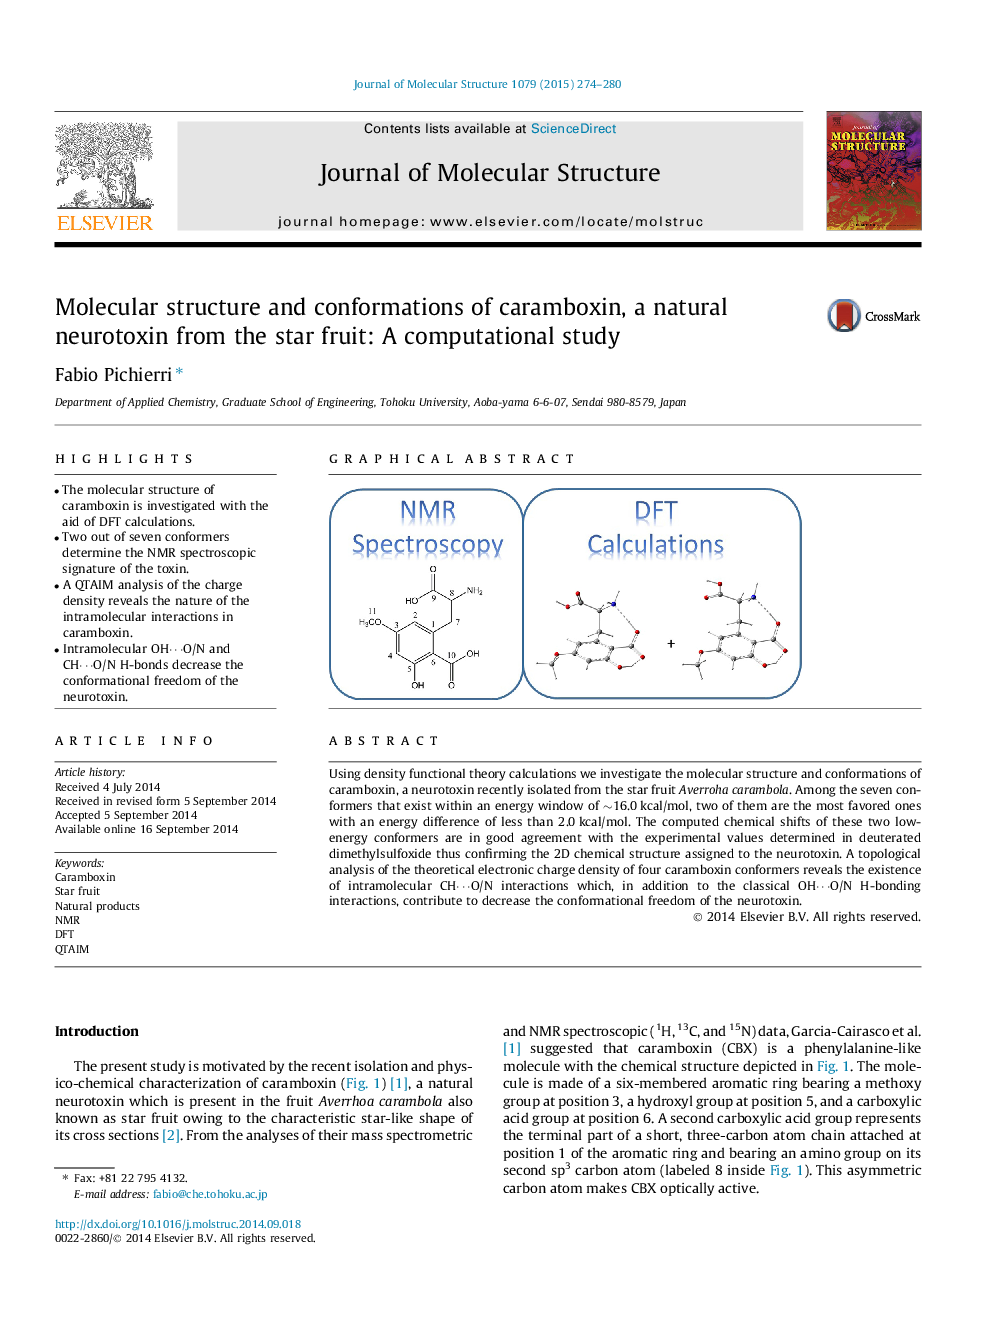 ساختار مولکولی و سازگاری کارامبوکسین، نوروتوکسین طبیعی از میوه ستاره: مطالعه محاسباتی 